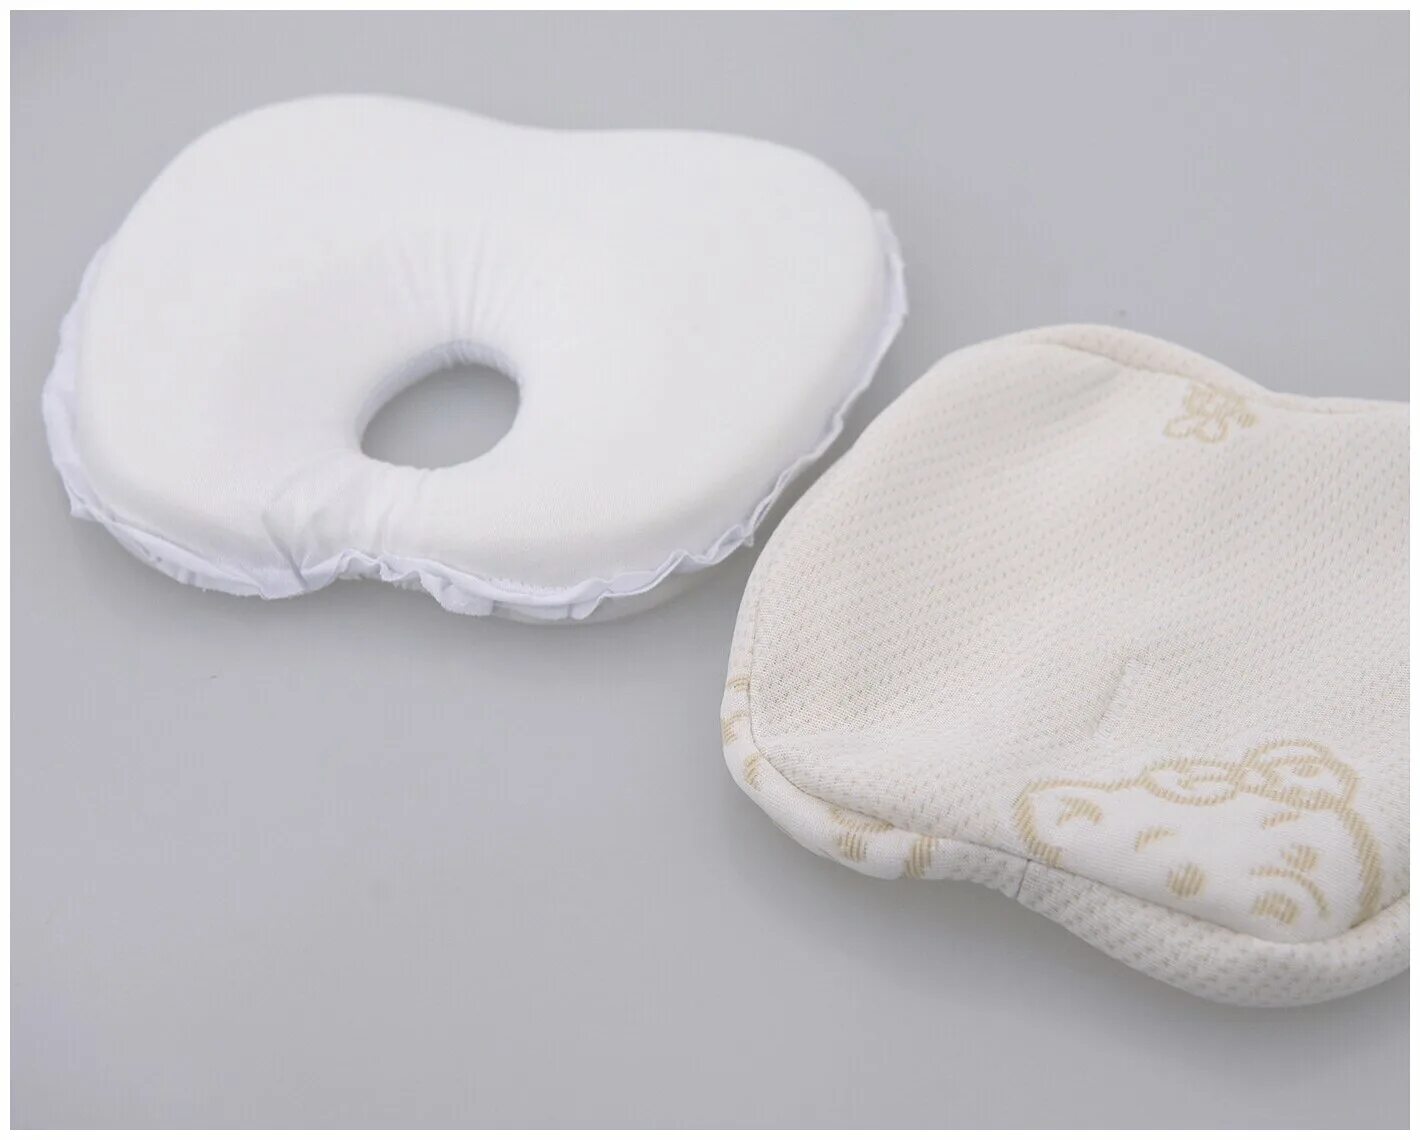 Мемори форм. Подушка Askona mam Agu. Askona подушка для новорожденных. Ортопедическая подушка для новорожденных Аскона. Аскона детская ортопедическая подушка.